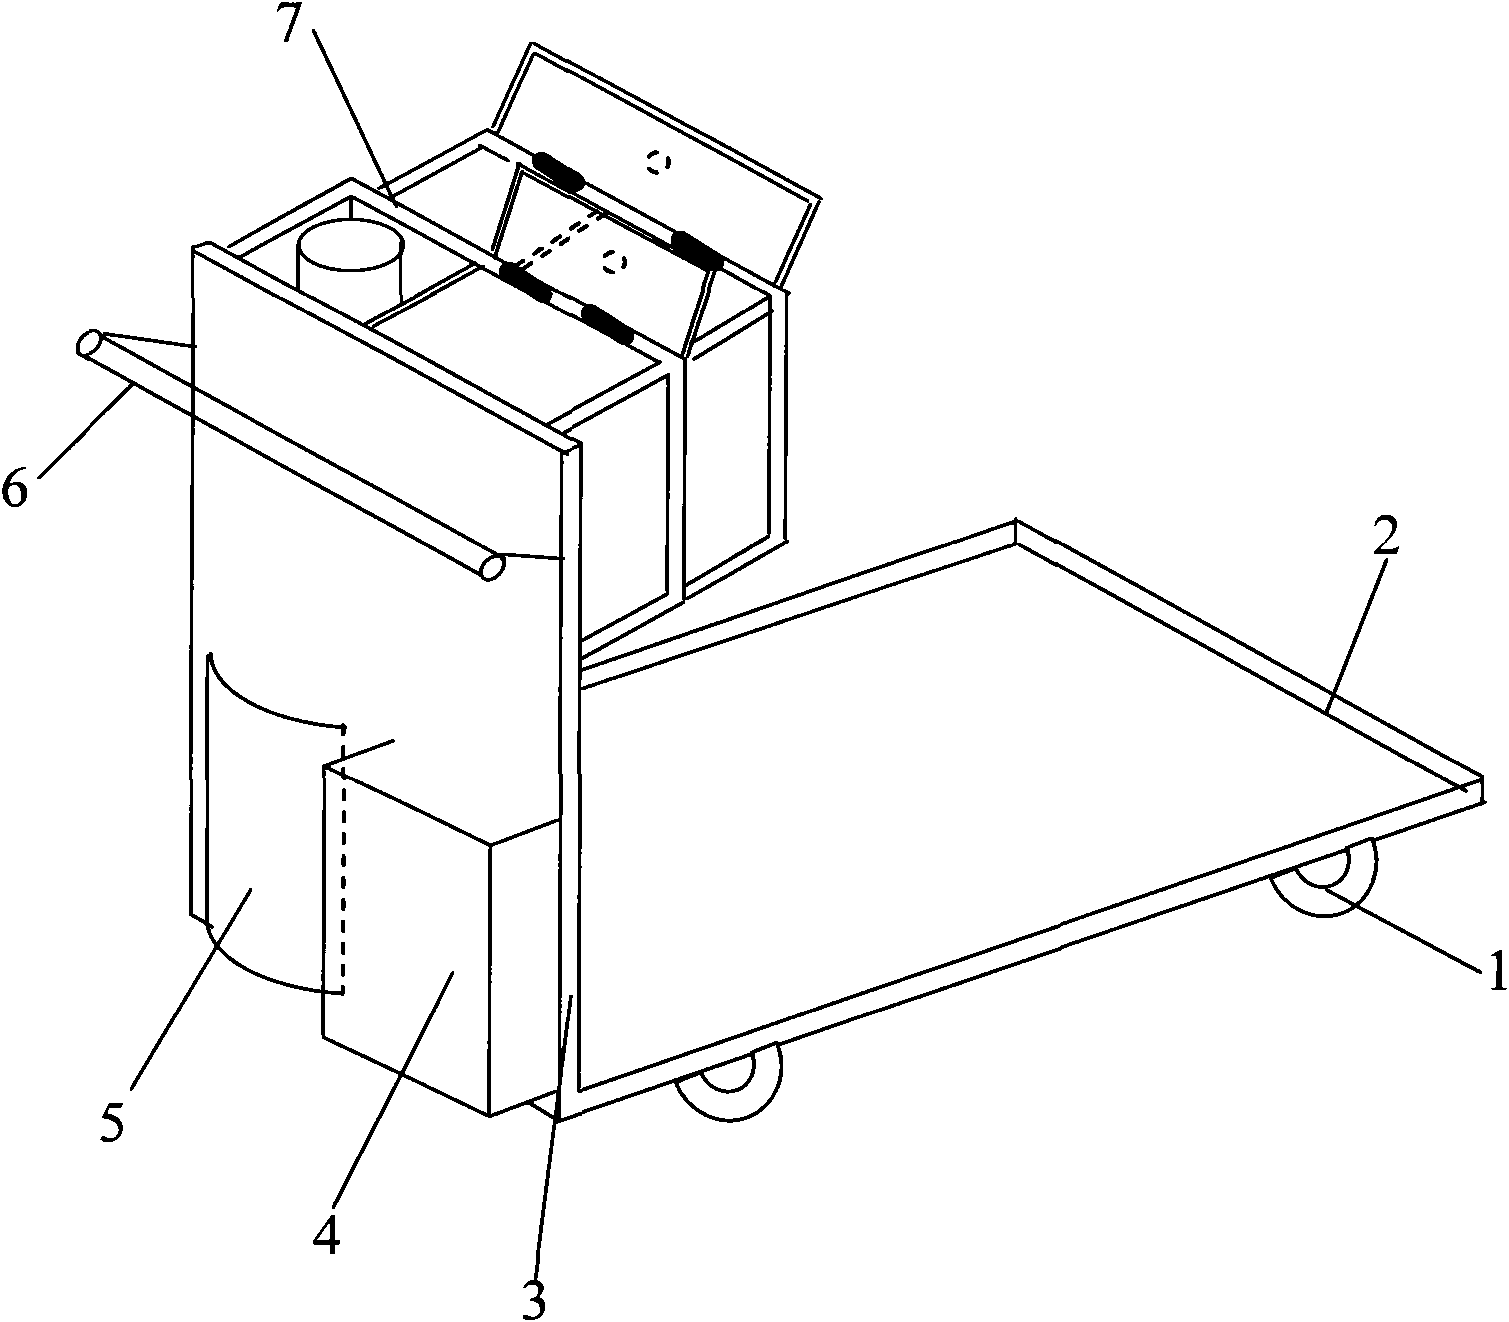 Design method of novel coating color-matching handcart